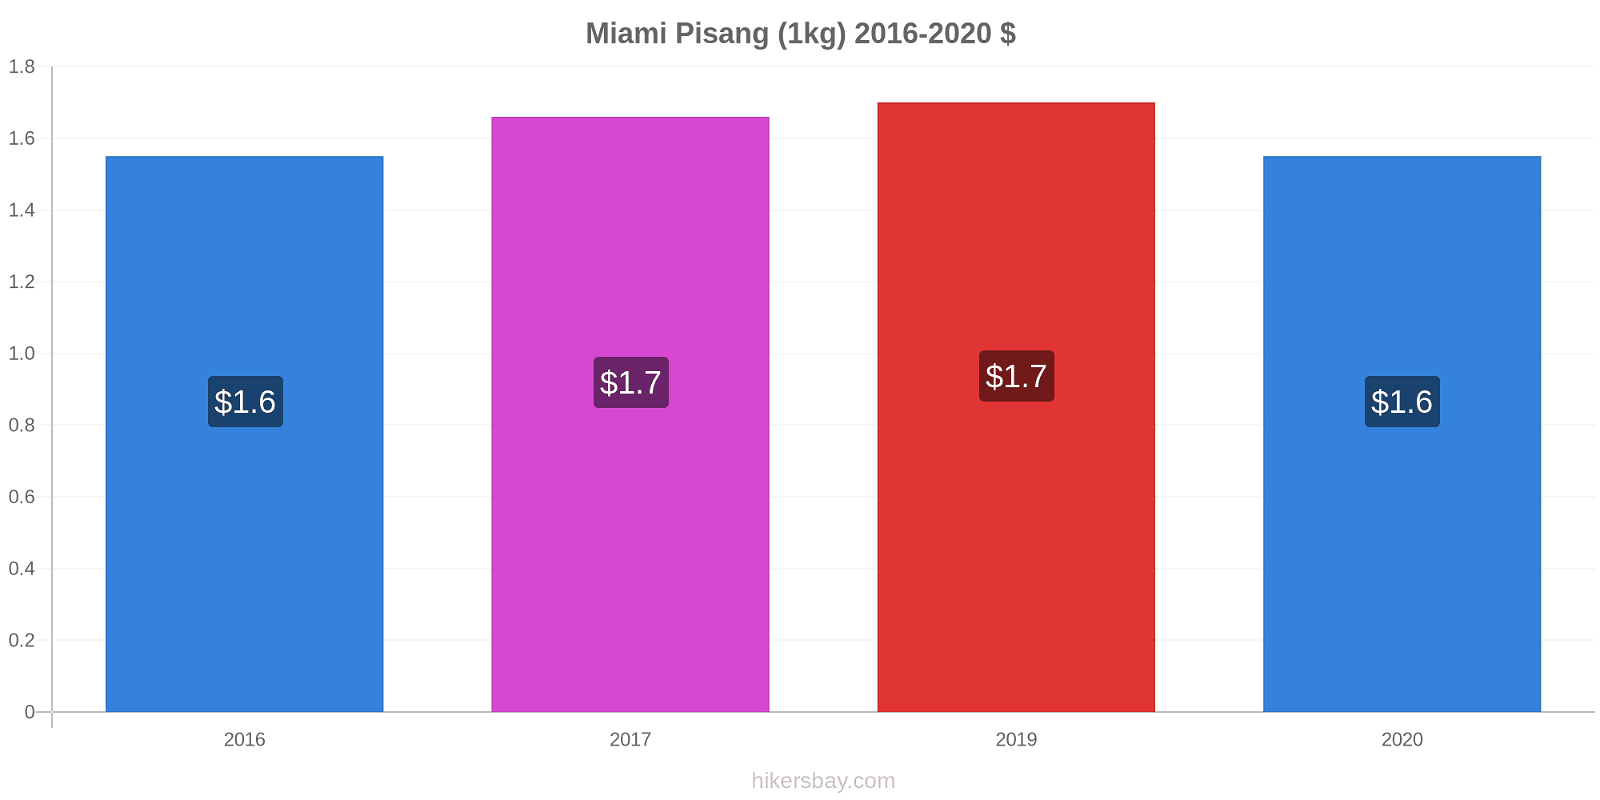 Miami perubahan harga Pisang (1kg) hikersbay.com